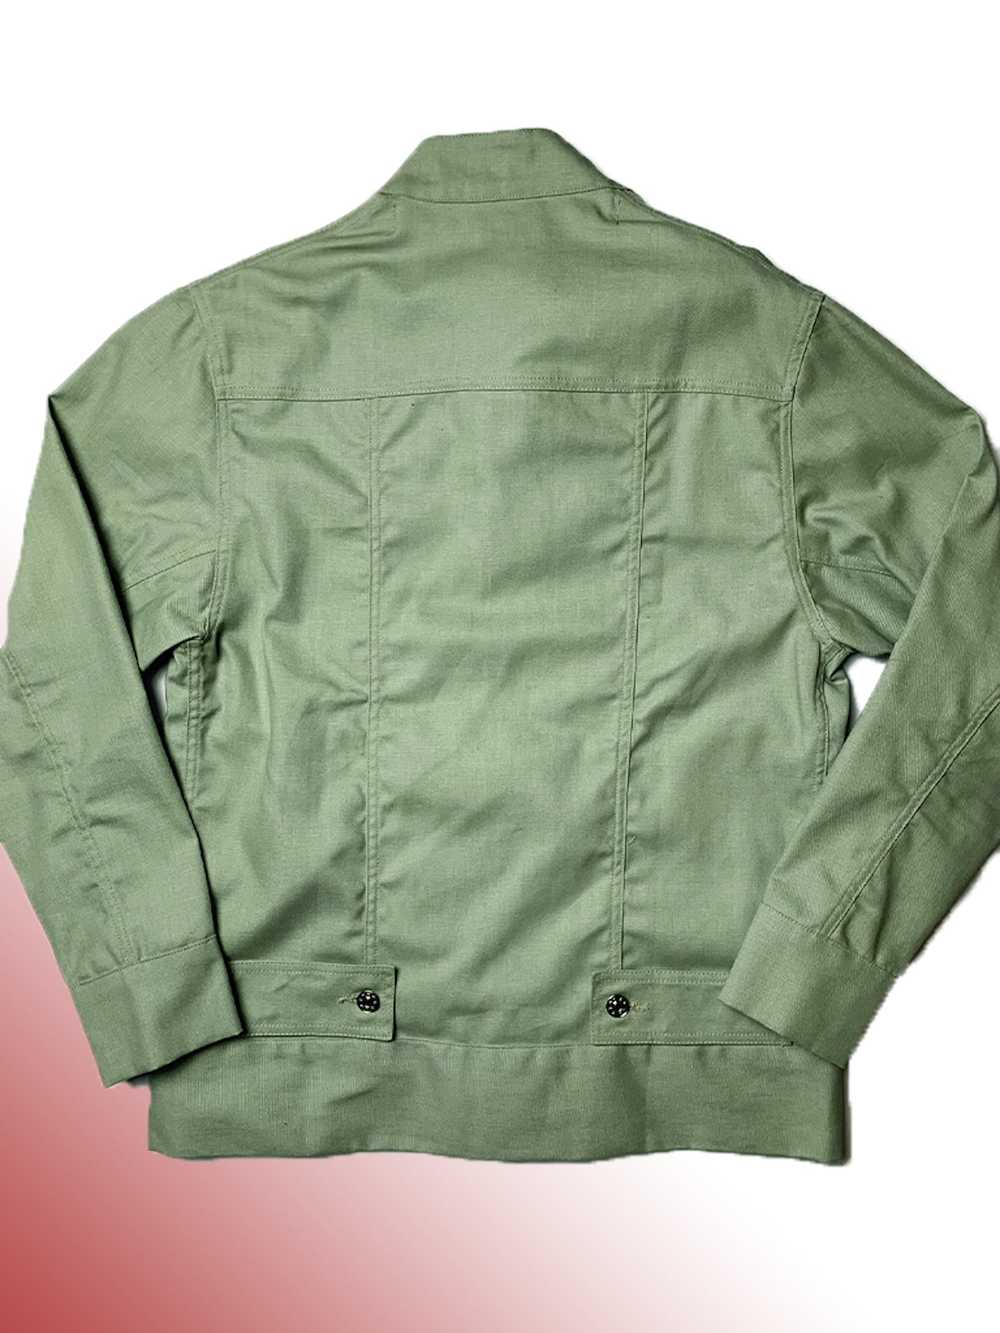 Eckhaus Latta Sage Green Military Shirt Jacket - image 6